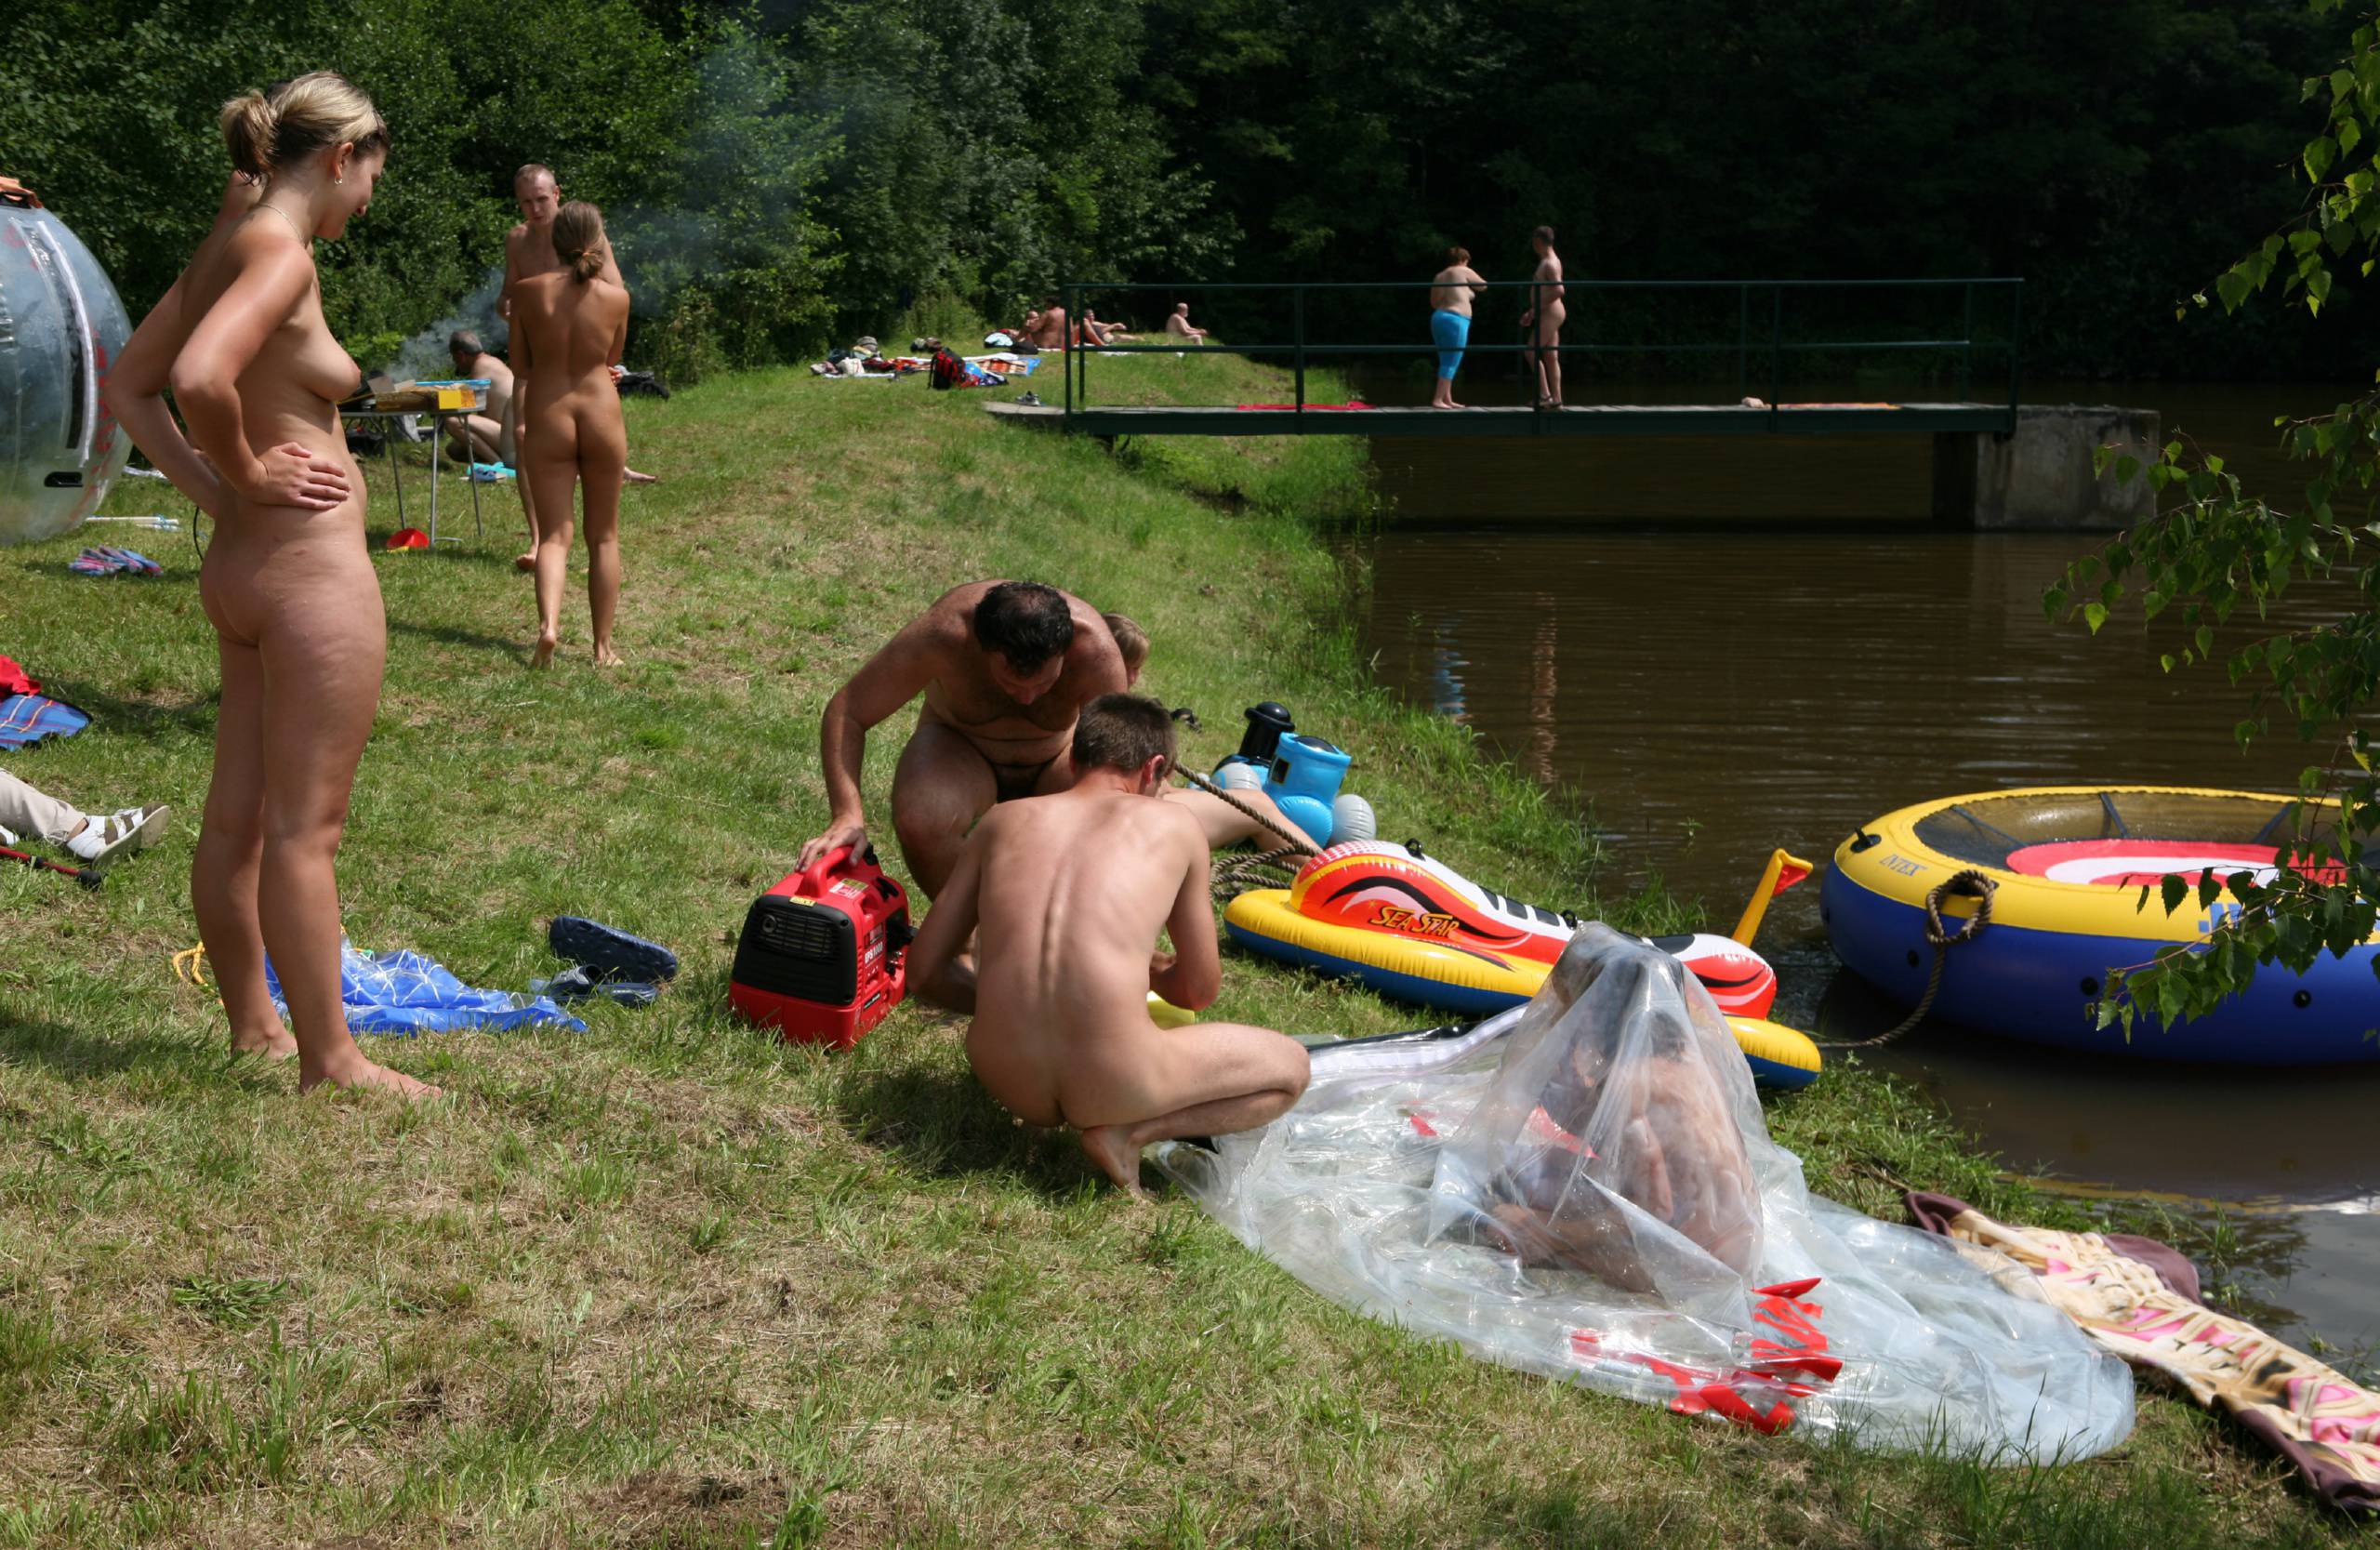 Nudist Pictures Outdoor Nude Fields - 1